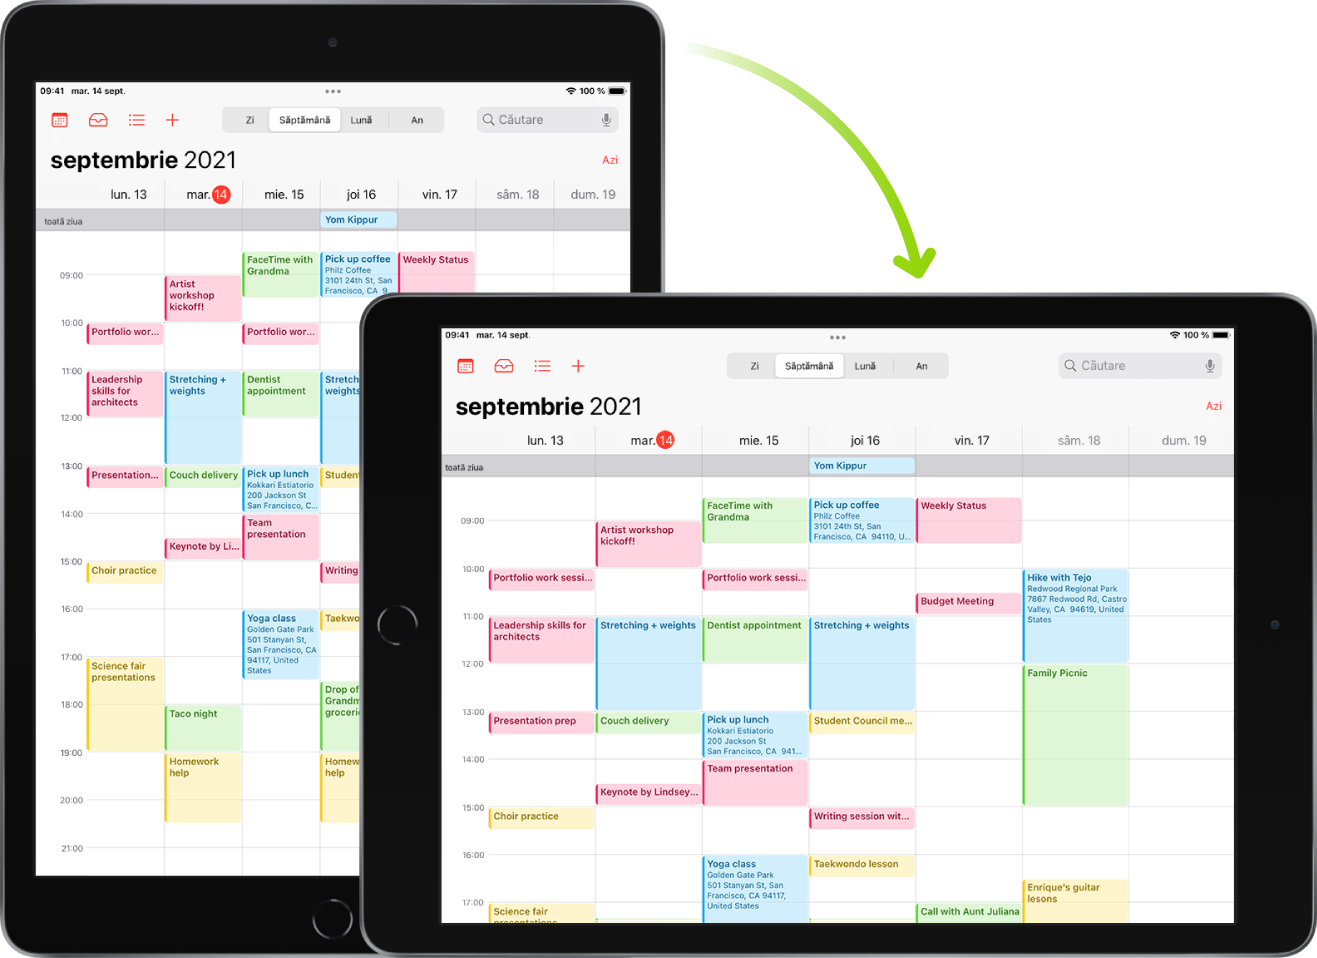 În fundal, iPad-ul afișează un ecran Calendar în orientarea portret; în prim-plan, iPad-ul este rotit și afișează ecranul Calendar în orientarea peisaj.